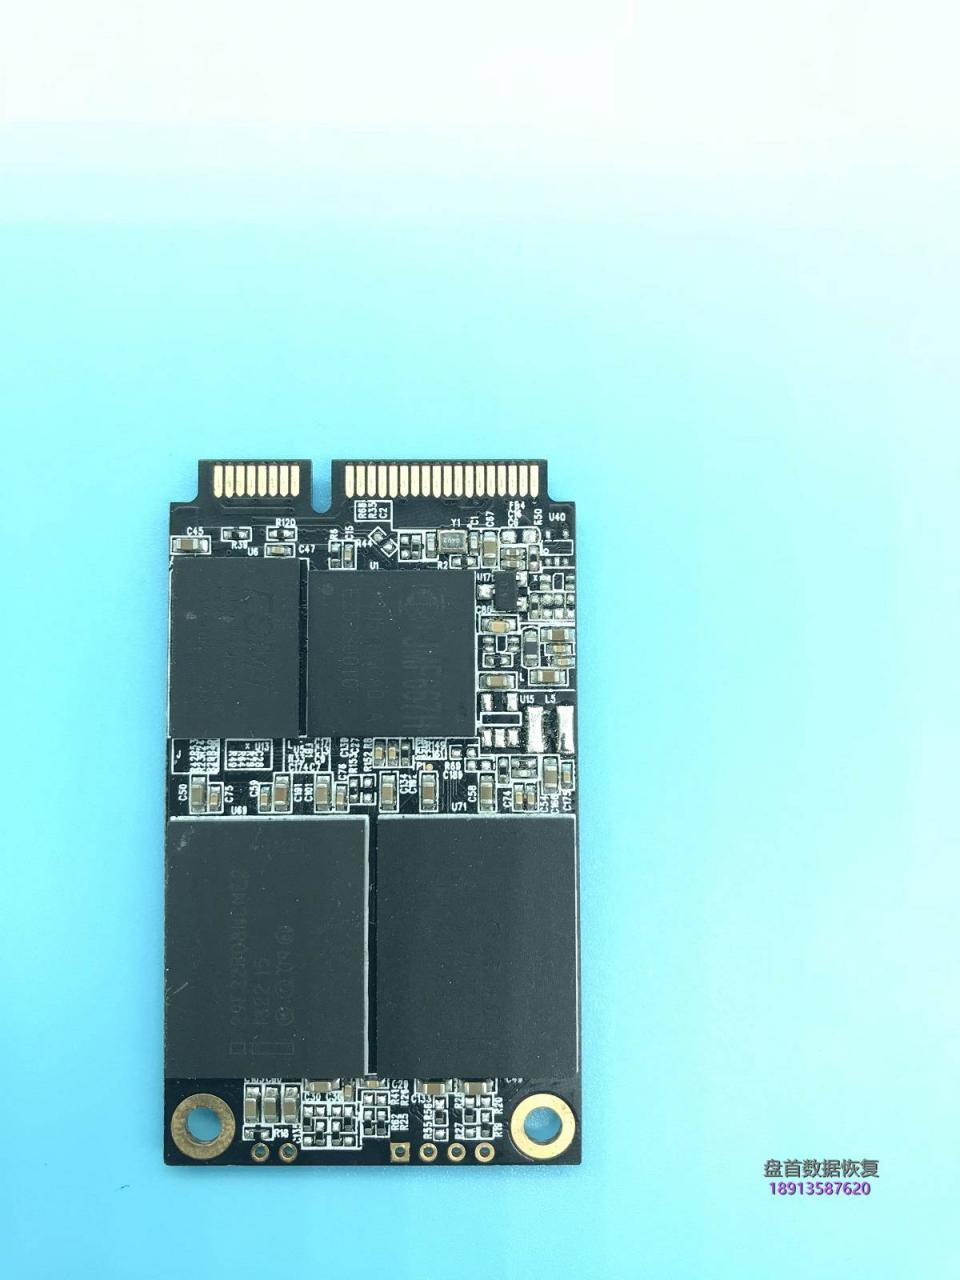 影驰战将M128G型号JMF667H主控SSD固态硬盘掉盘后不能读取数据无法识别数据恢复成功